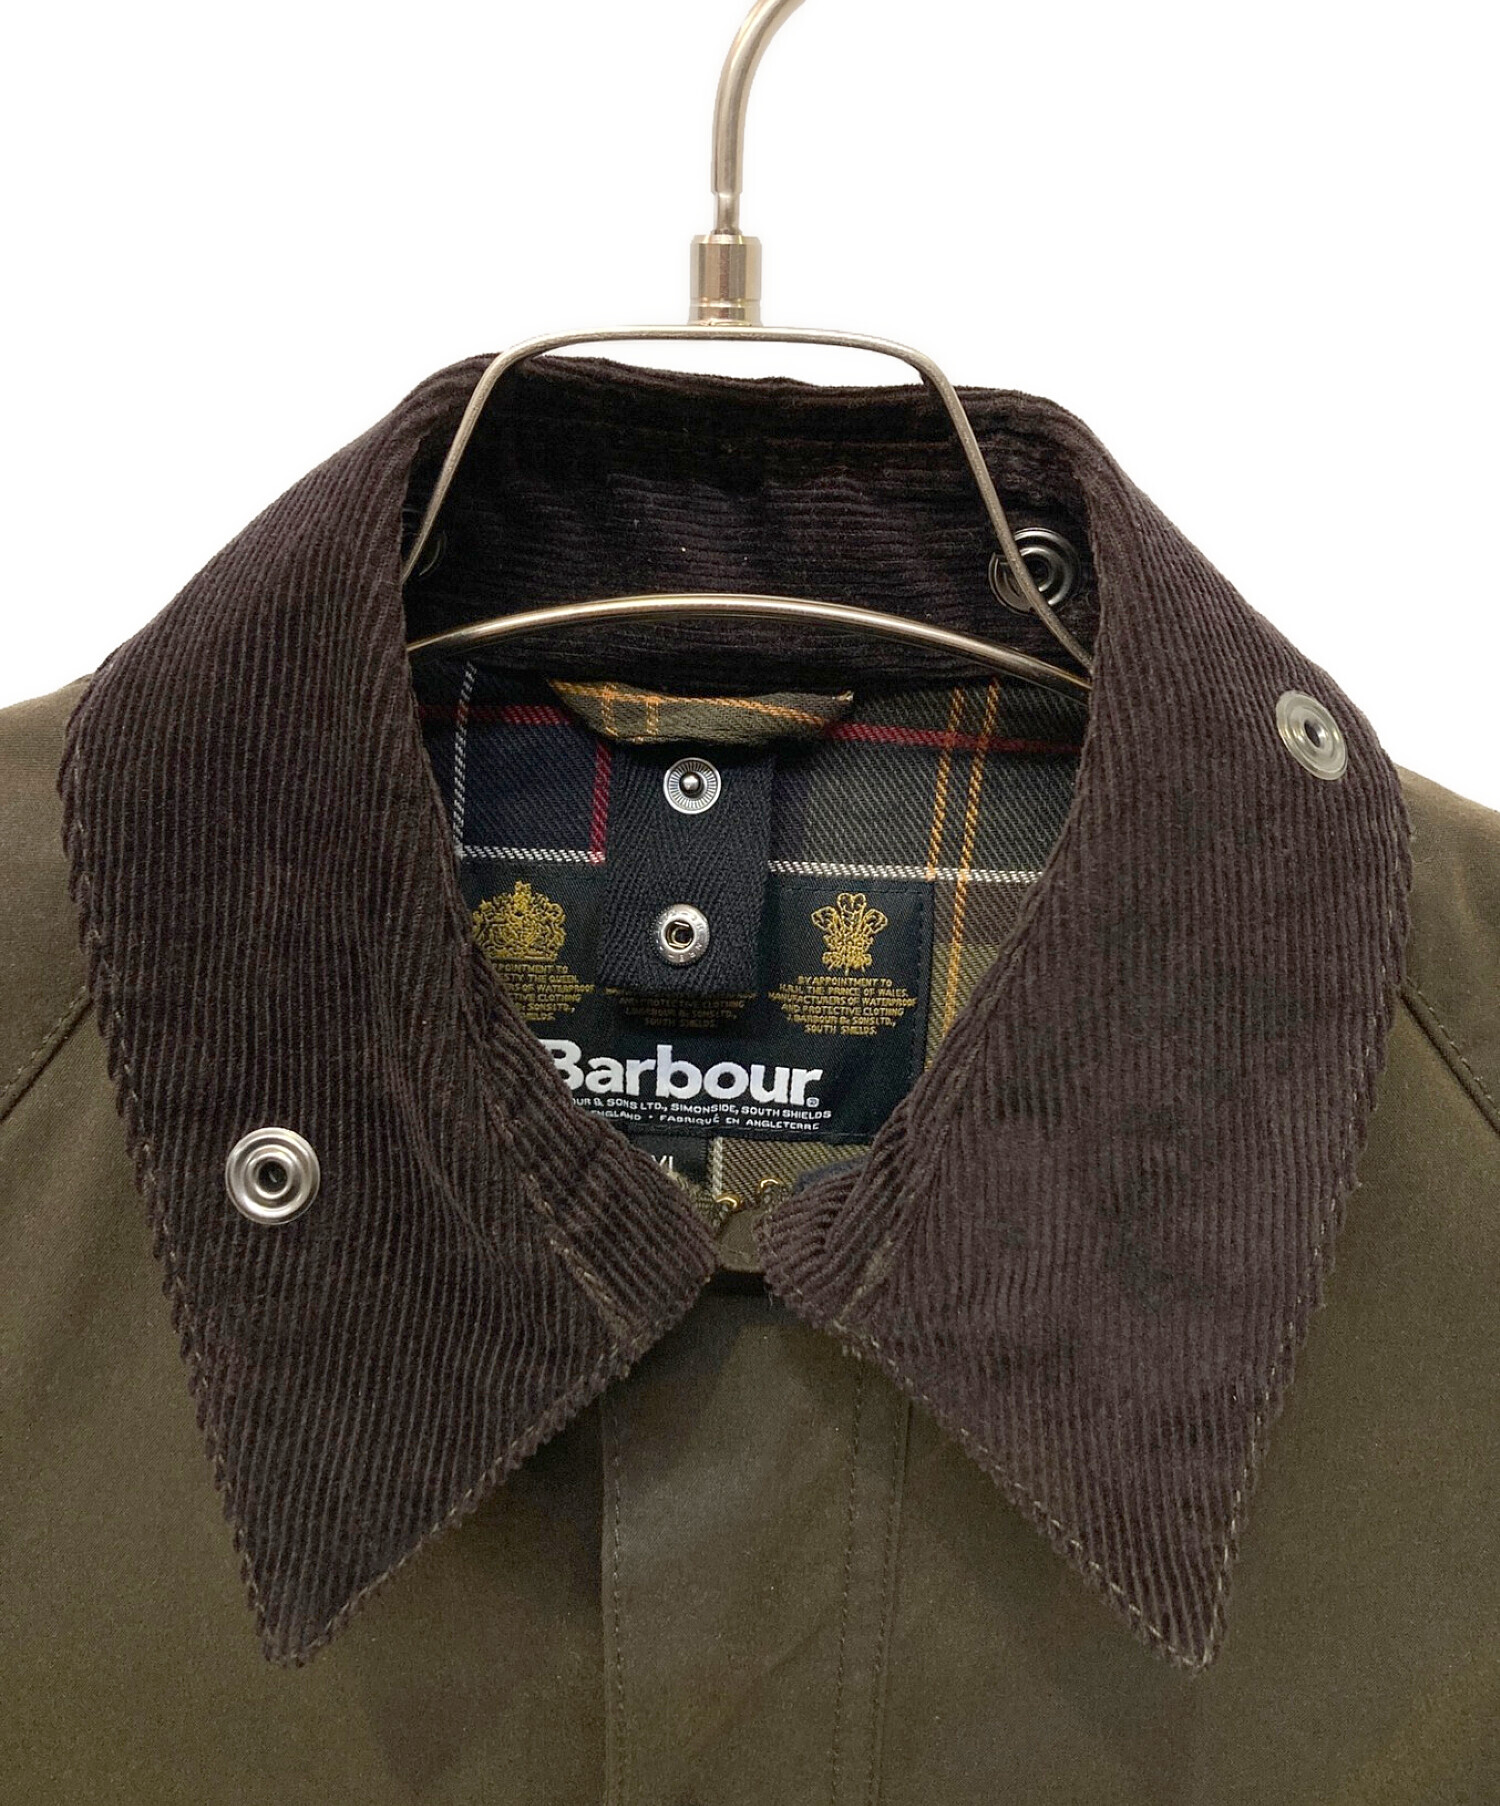 Barbour (バブアー) クラシックビューフォートジャケット ブラウン サイズ:XL